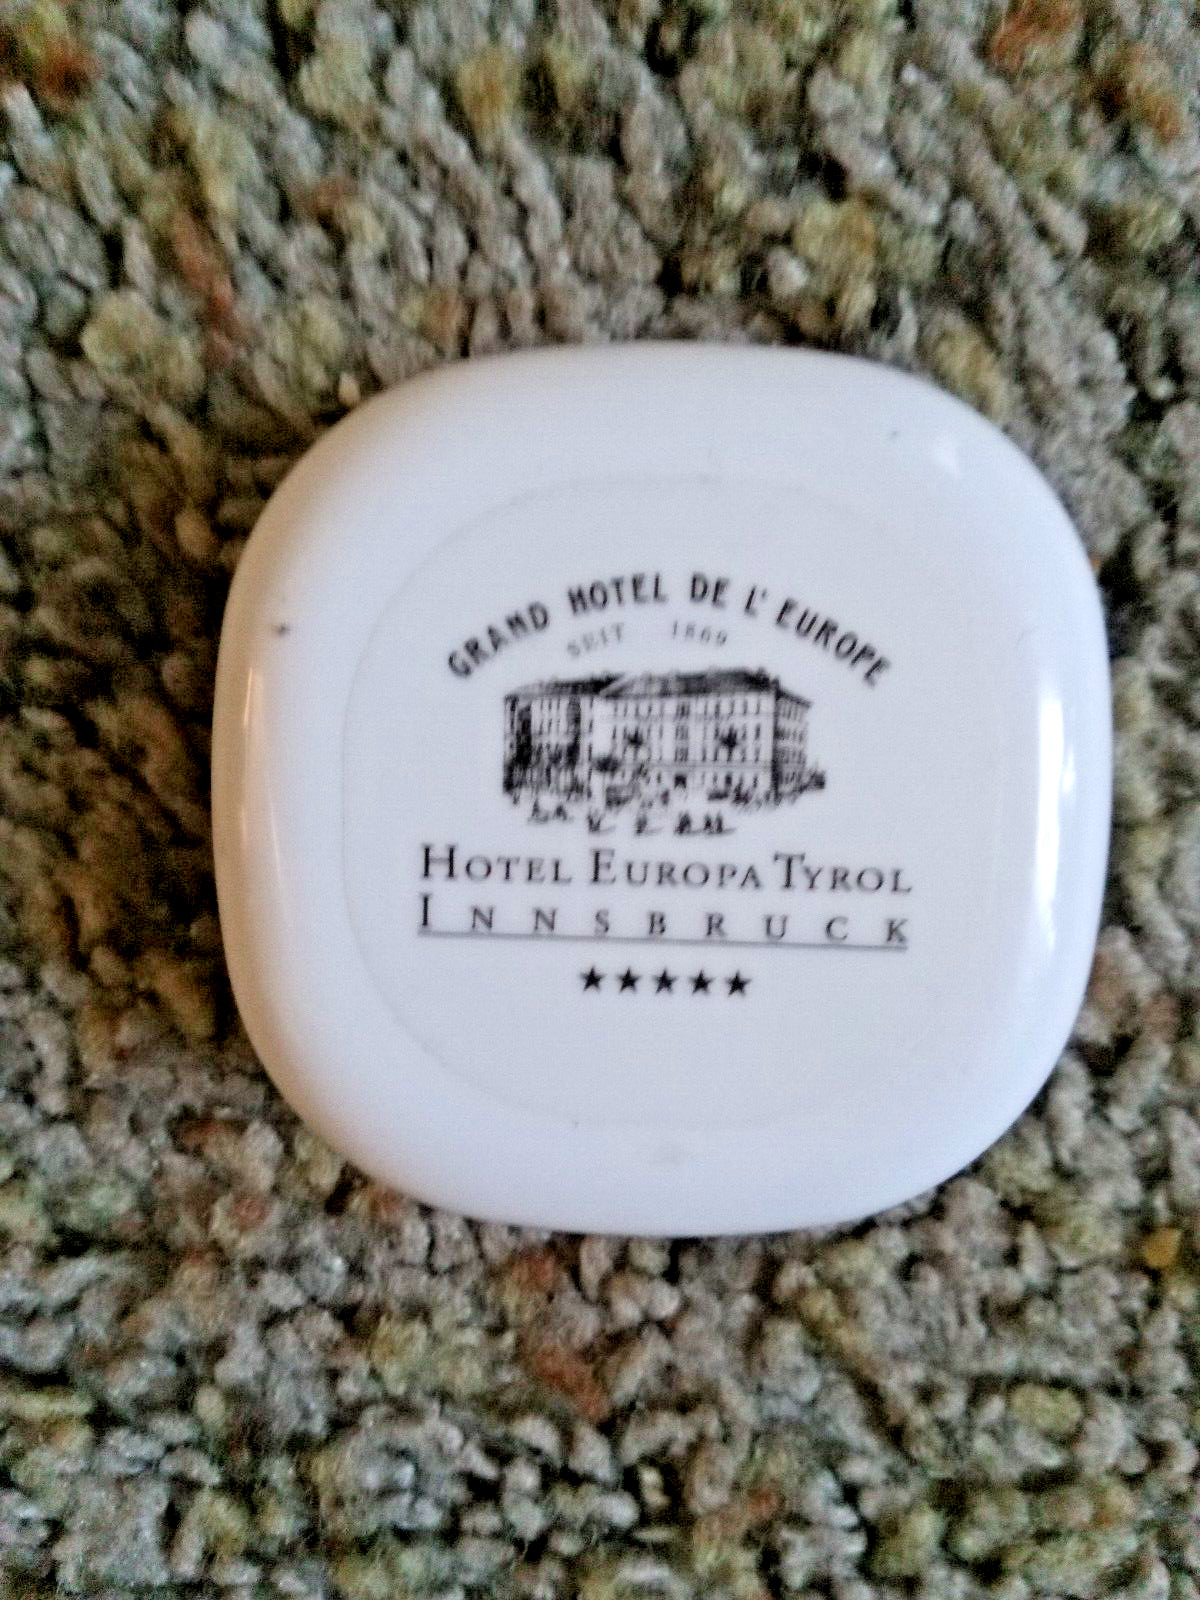 Grand Hotel De L Europe Hotel Europa Tyrol InnsBruck Guest Soap Tray unused soap